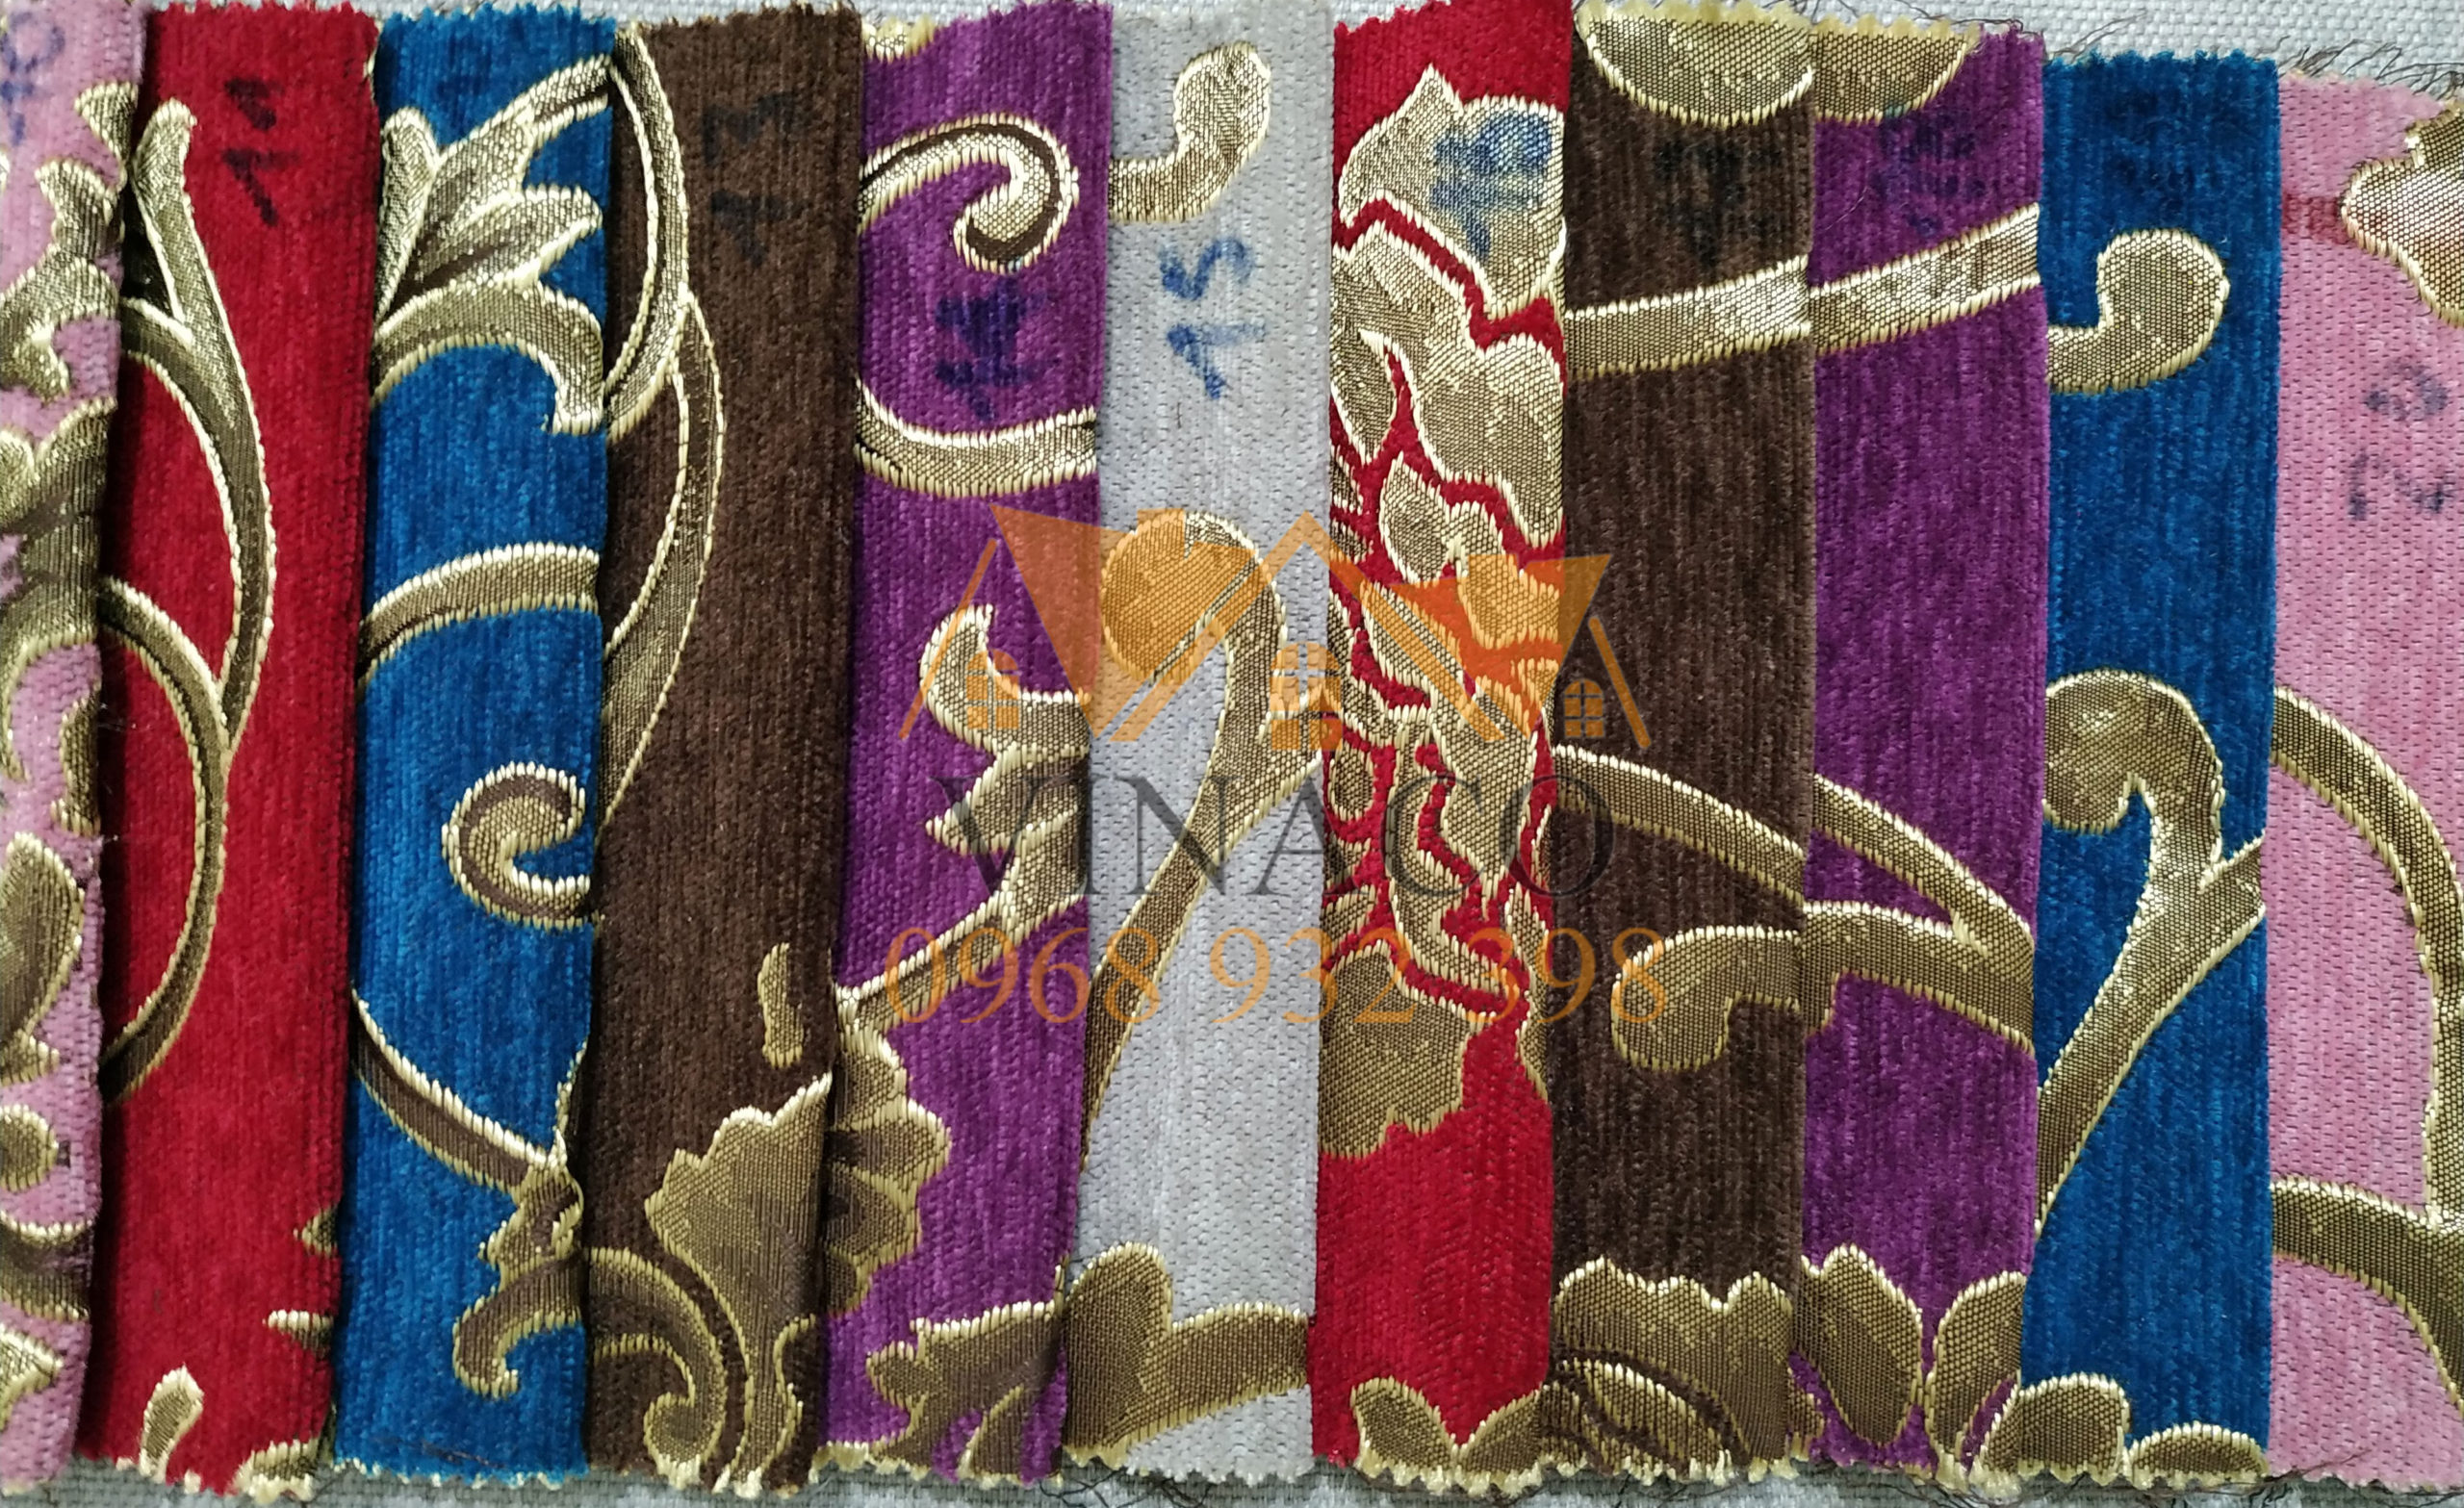 Mẫu vải hoa văn cổ điển TM05 thích hợp dùng làm vỏ đệm ghế đồng kỵ giả cổ